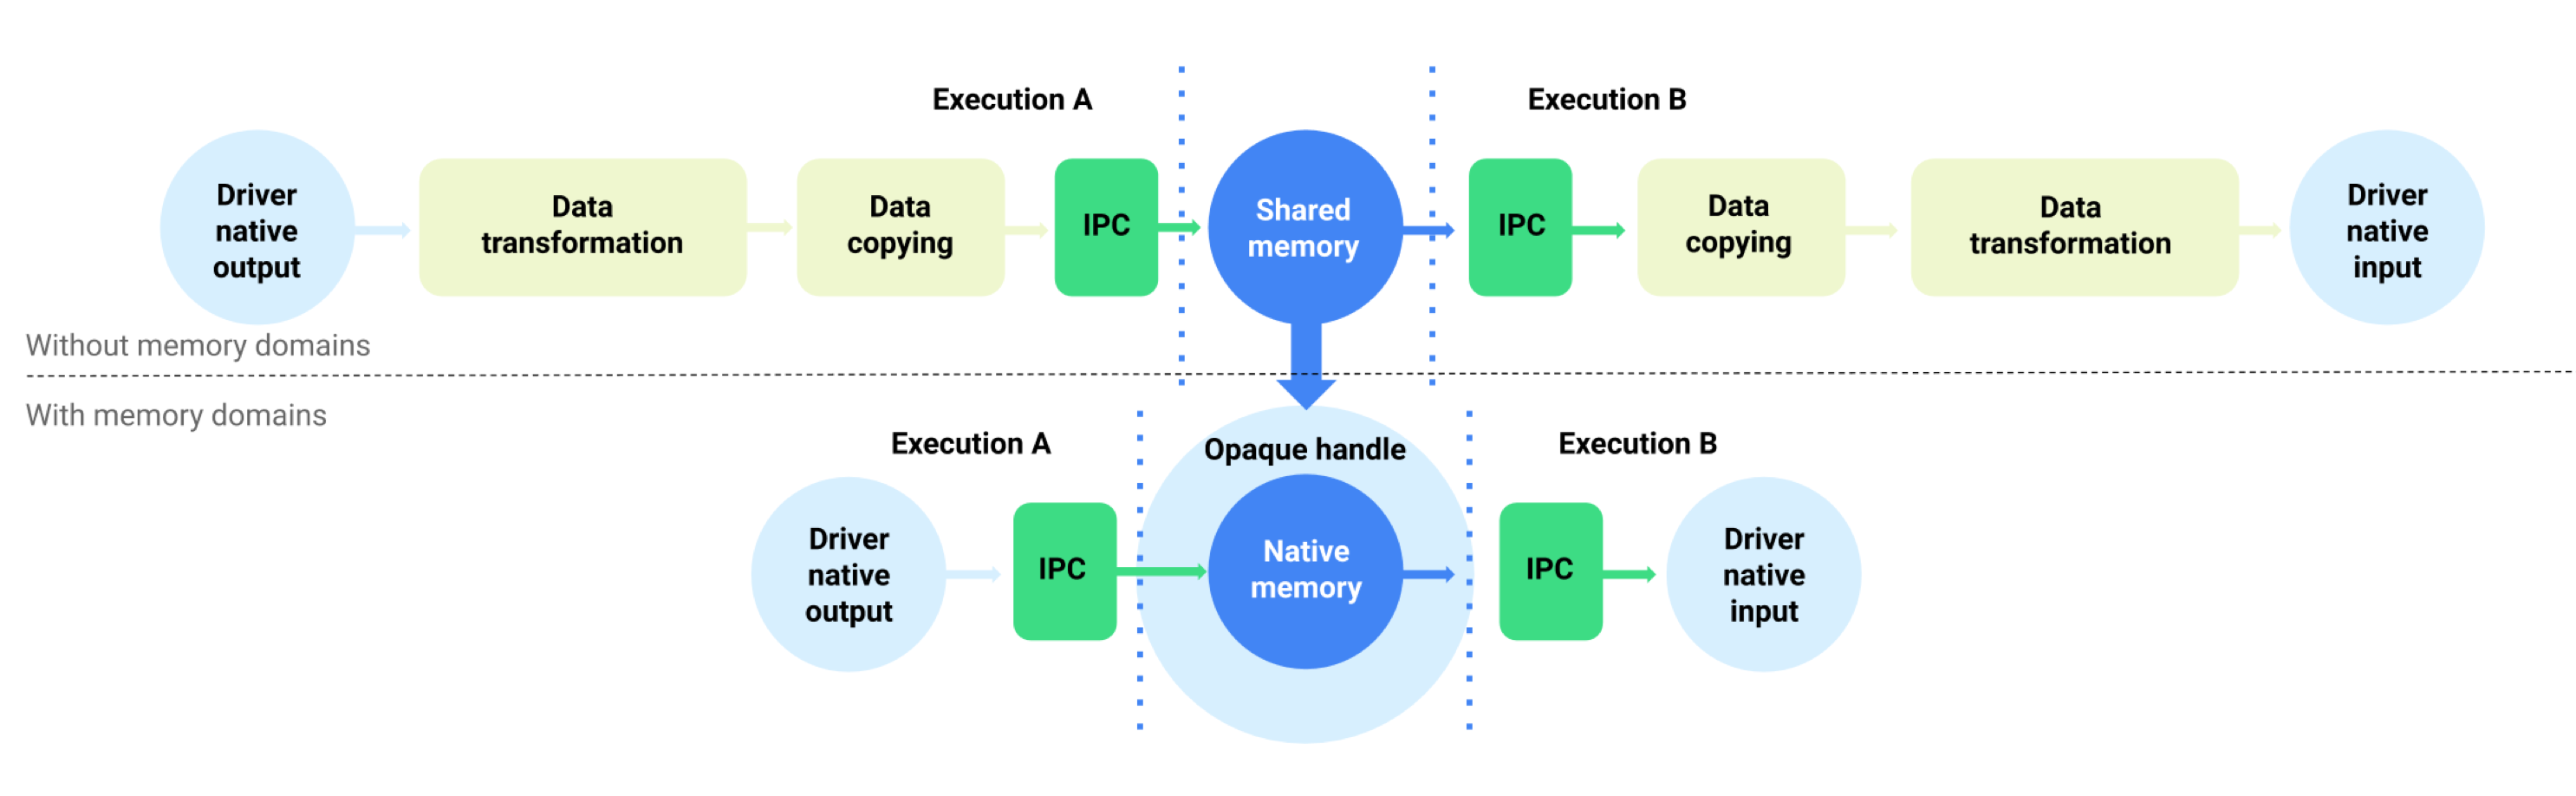 זרימת נתונים במאגר הנתונים הזמני עם או בלי דומיינים של זיכרון